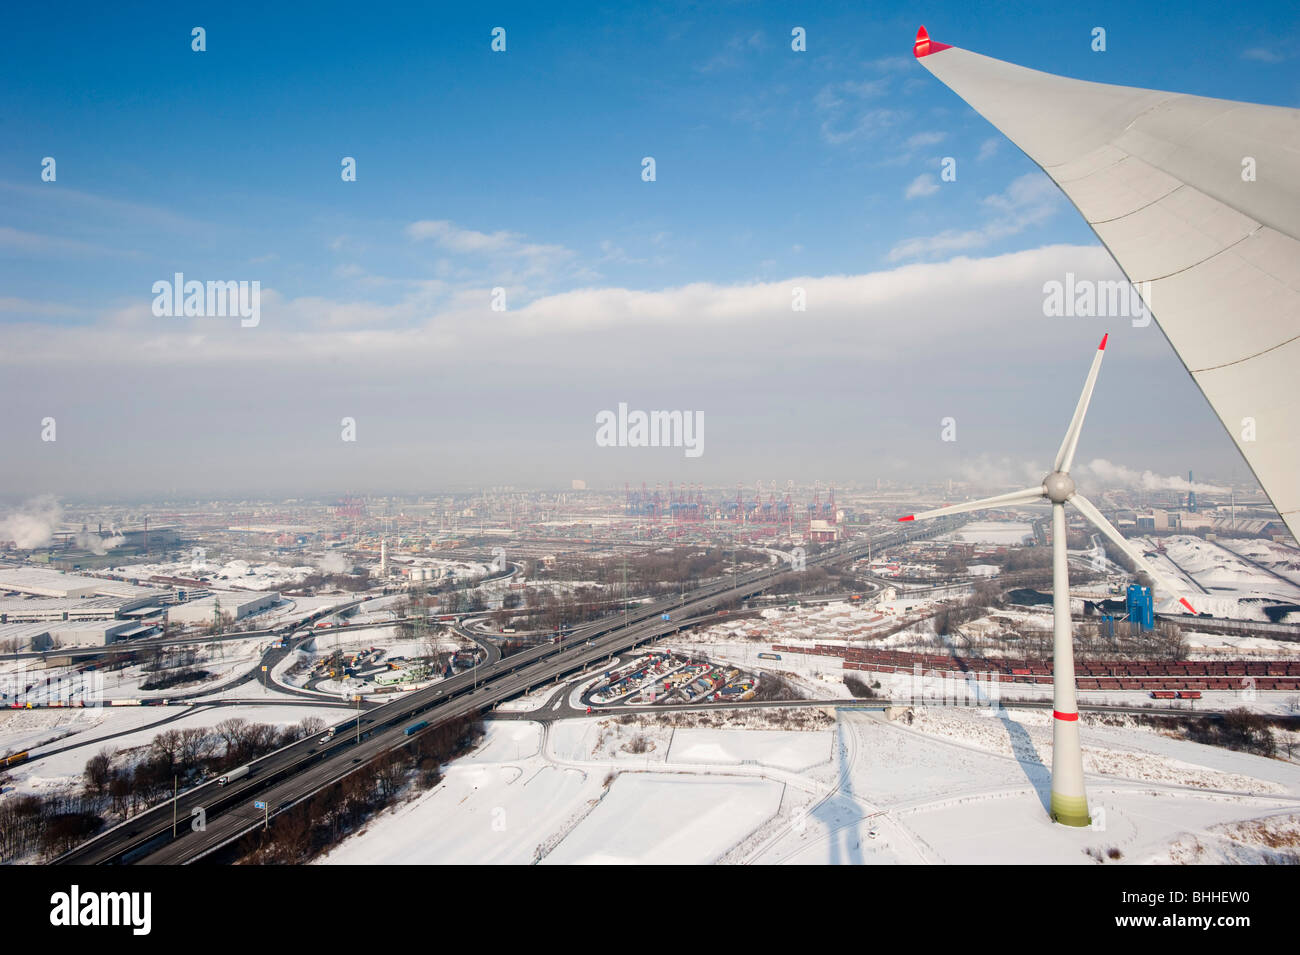 Allemagne Hamburg - éoliennes Enercon E-126 avec 6 MW dans le port et vue sur la ville de Hambourg Banque D'Images